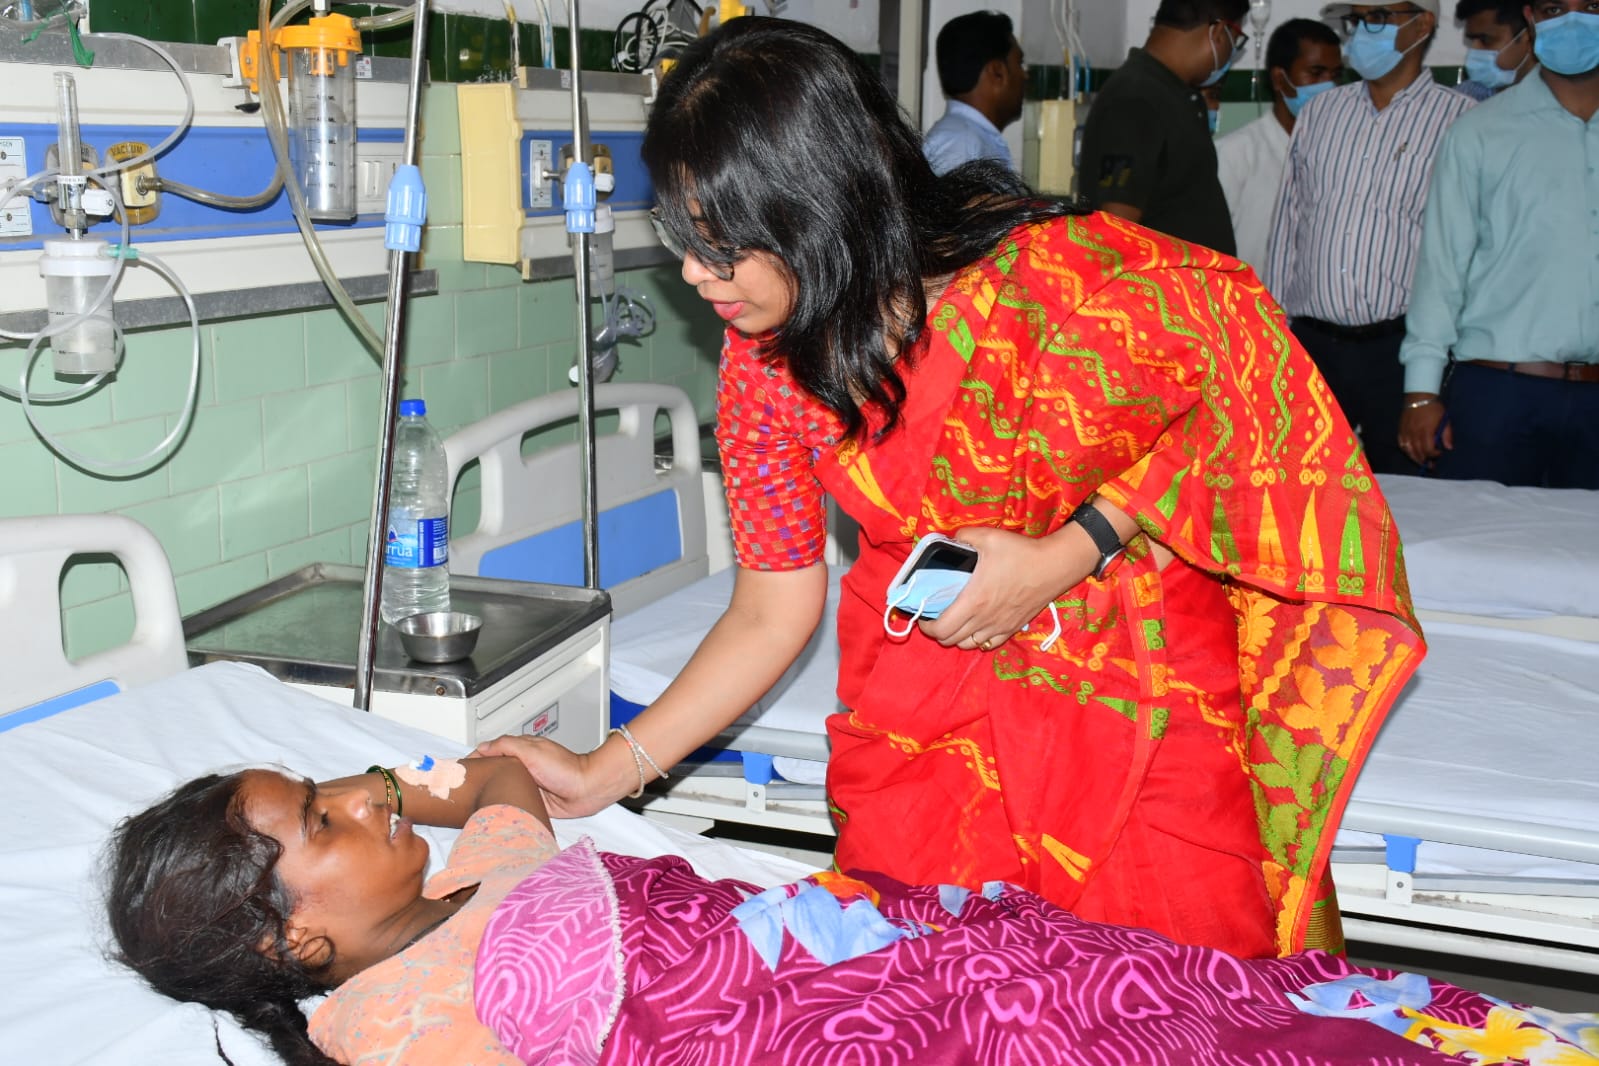 बरेली: जिला अस्पताल का औचक निरीक्षण करने पहुंचीं कमिश्नर Sanyukta Samaddar, मरीजों ने सुनाई व्यथा